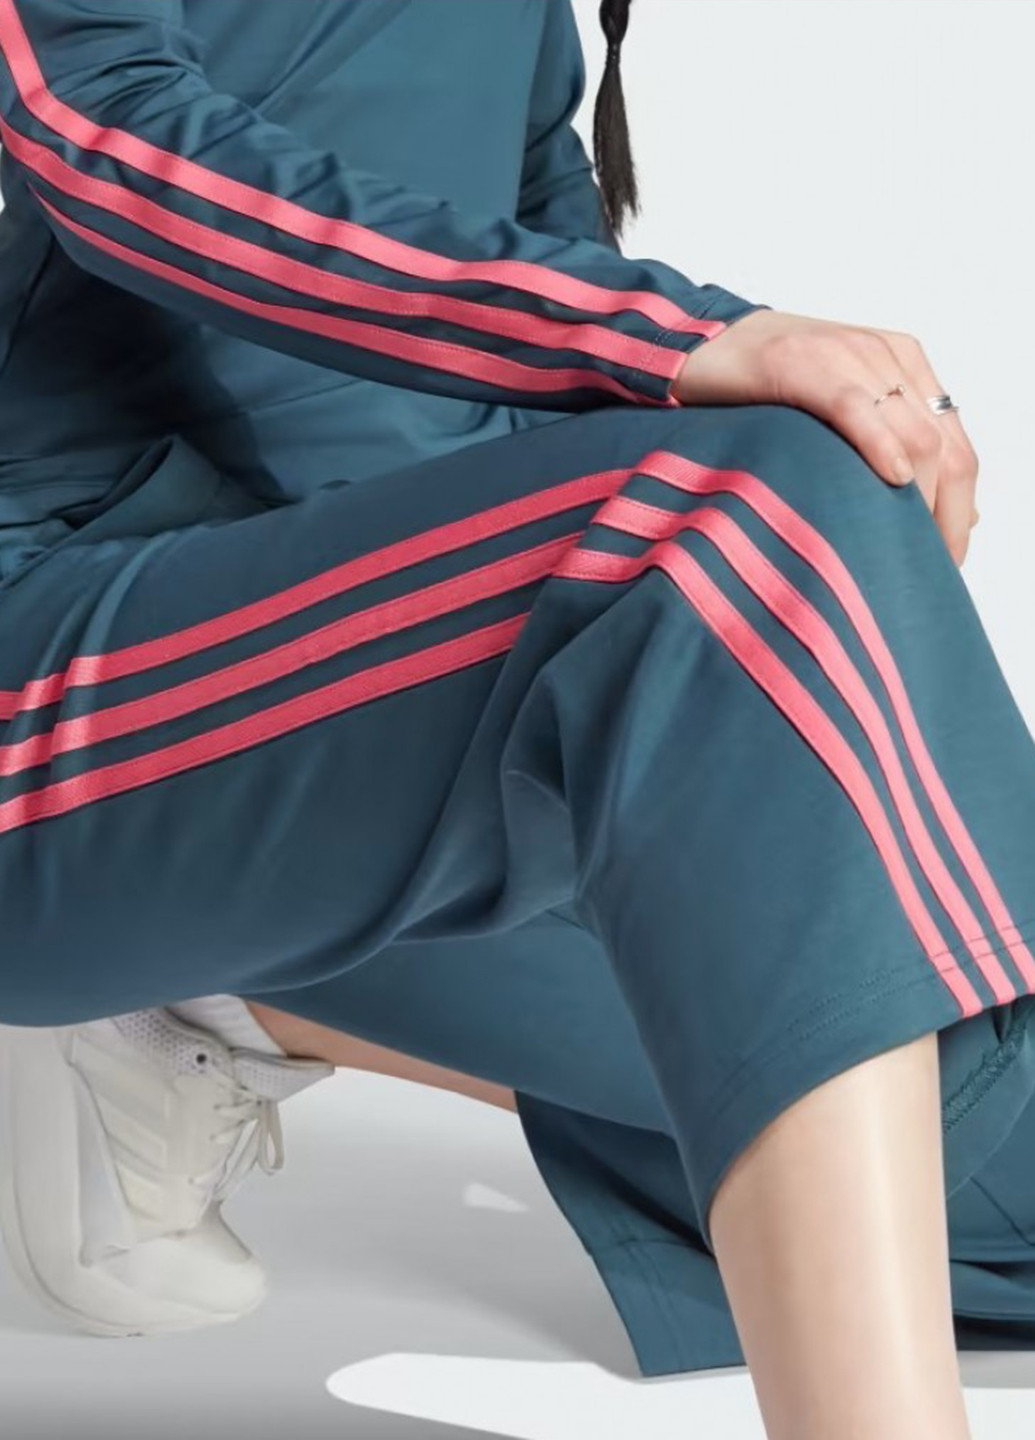 Темно-бирюзовые спортивные демисезонные клеш брюки adidas